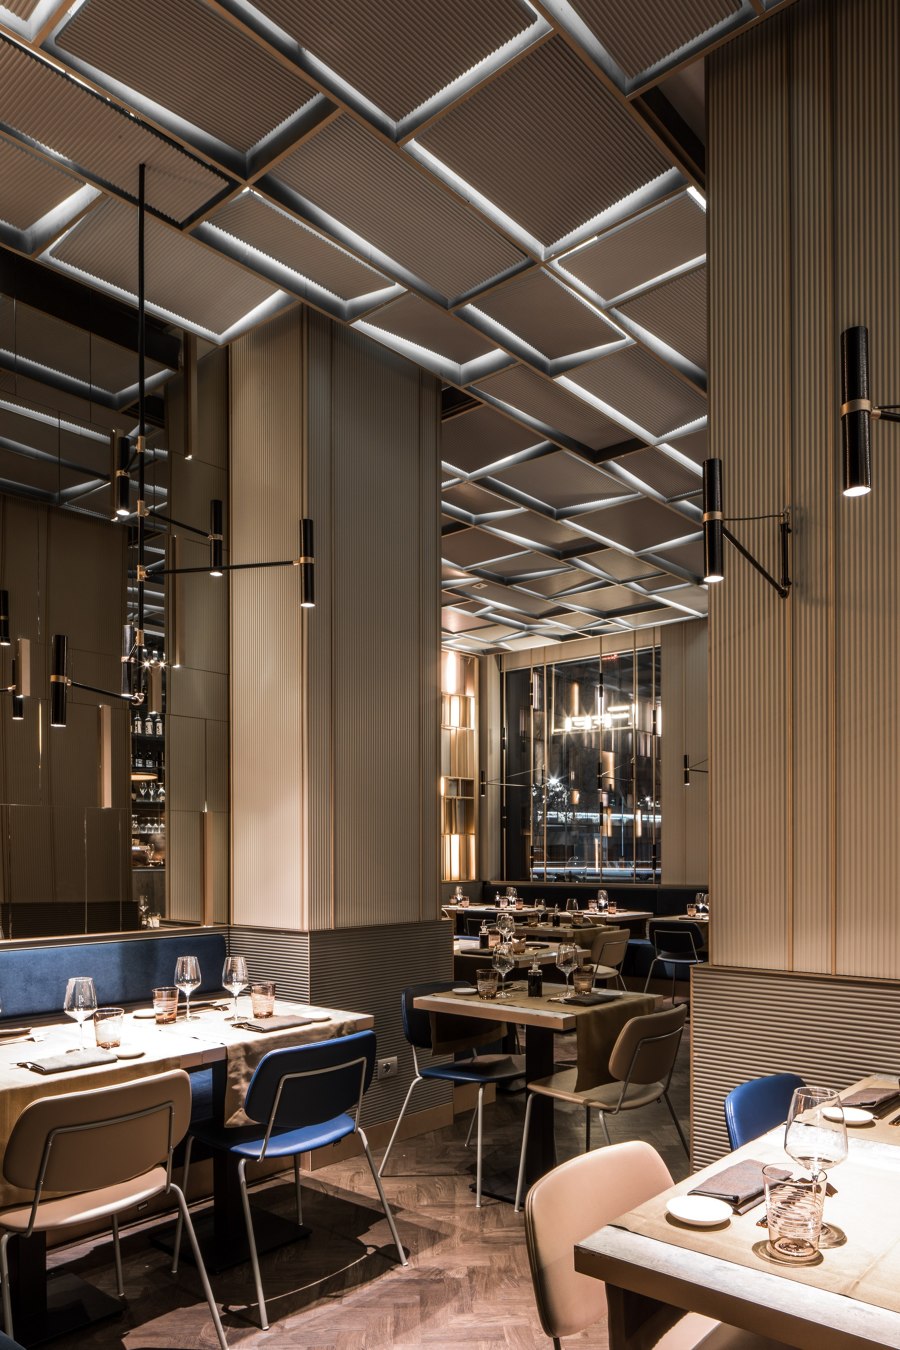 Feel | Restaurant interiors | LAI STUDIO, Maurizio Lai